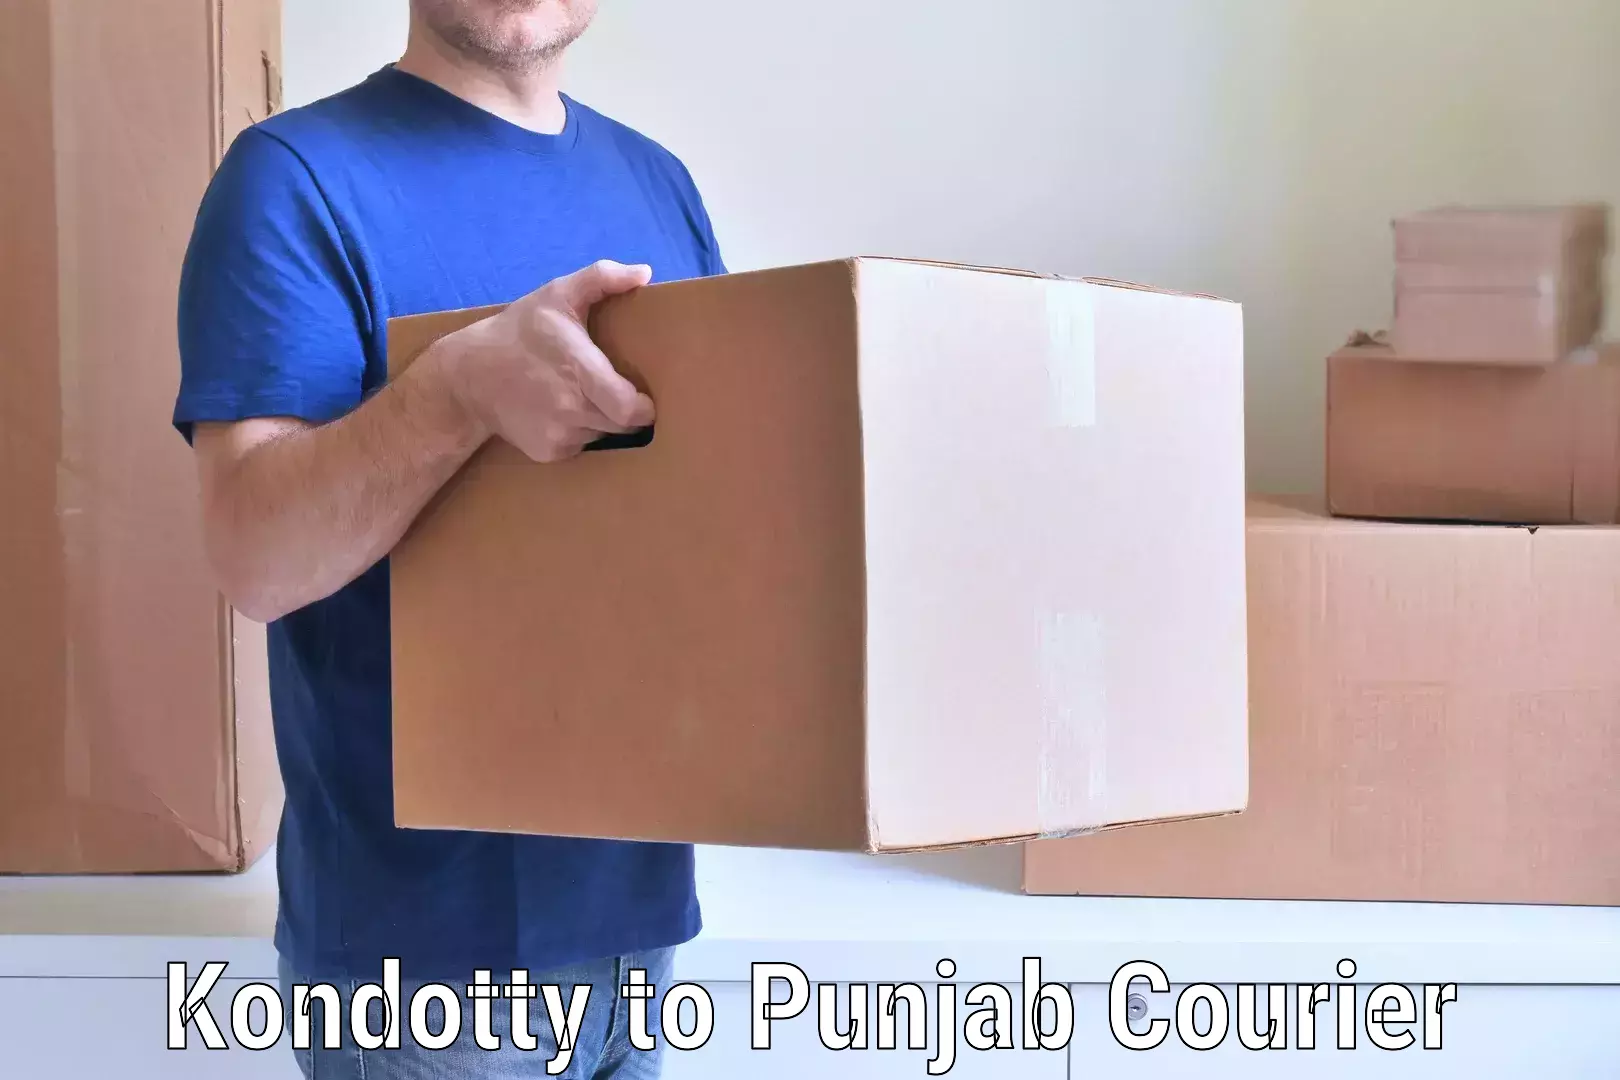 Full-service movers Kondotty to Punjab